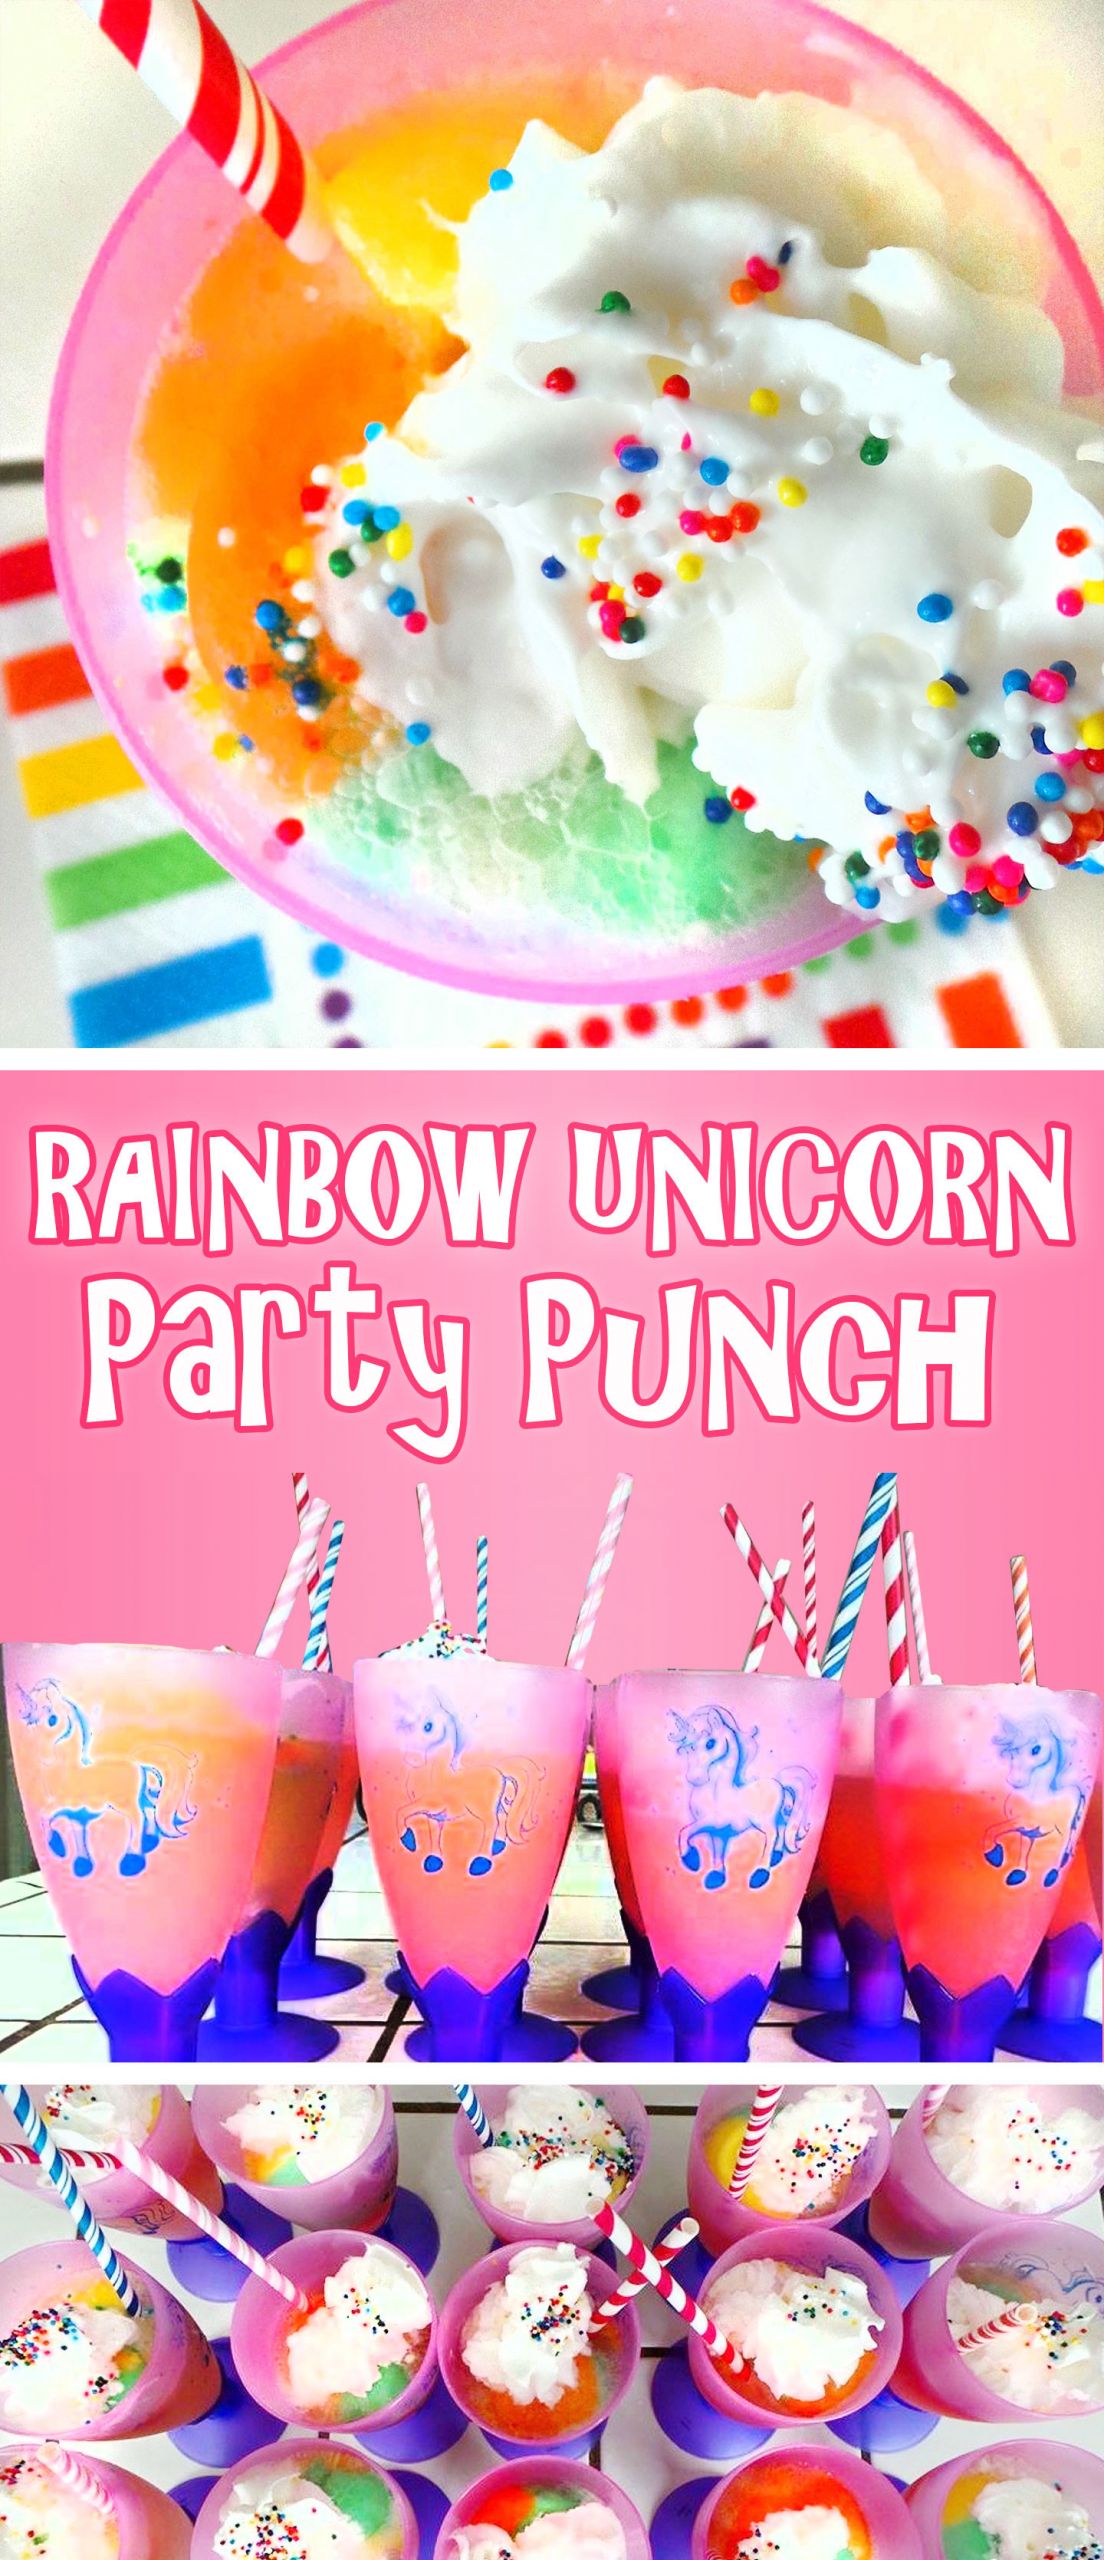 Unicorn Party Food Ideas Ponytails
 Rainbow Unicorn Party Punch